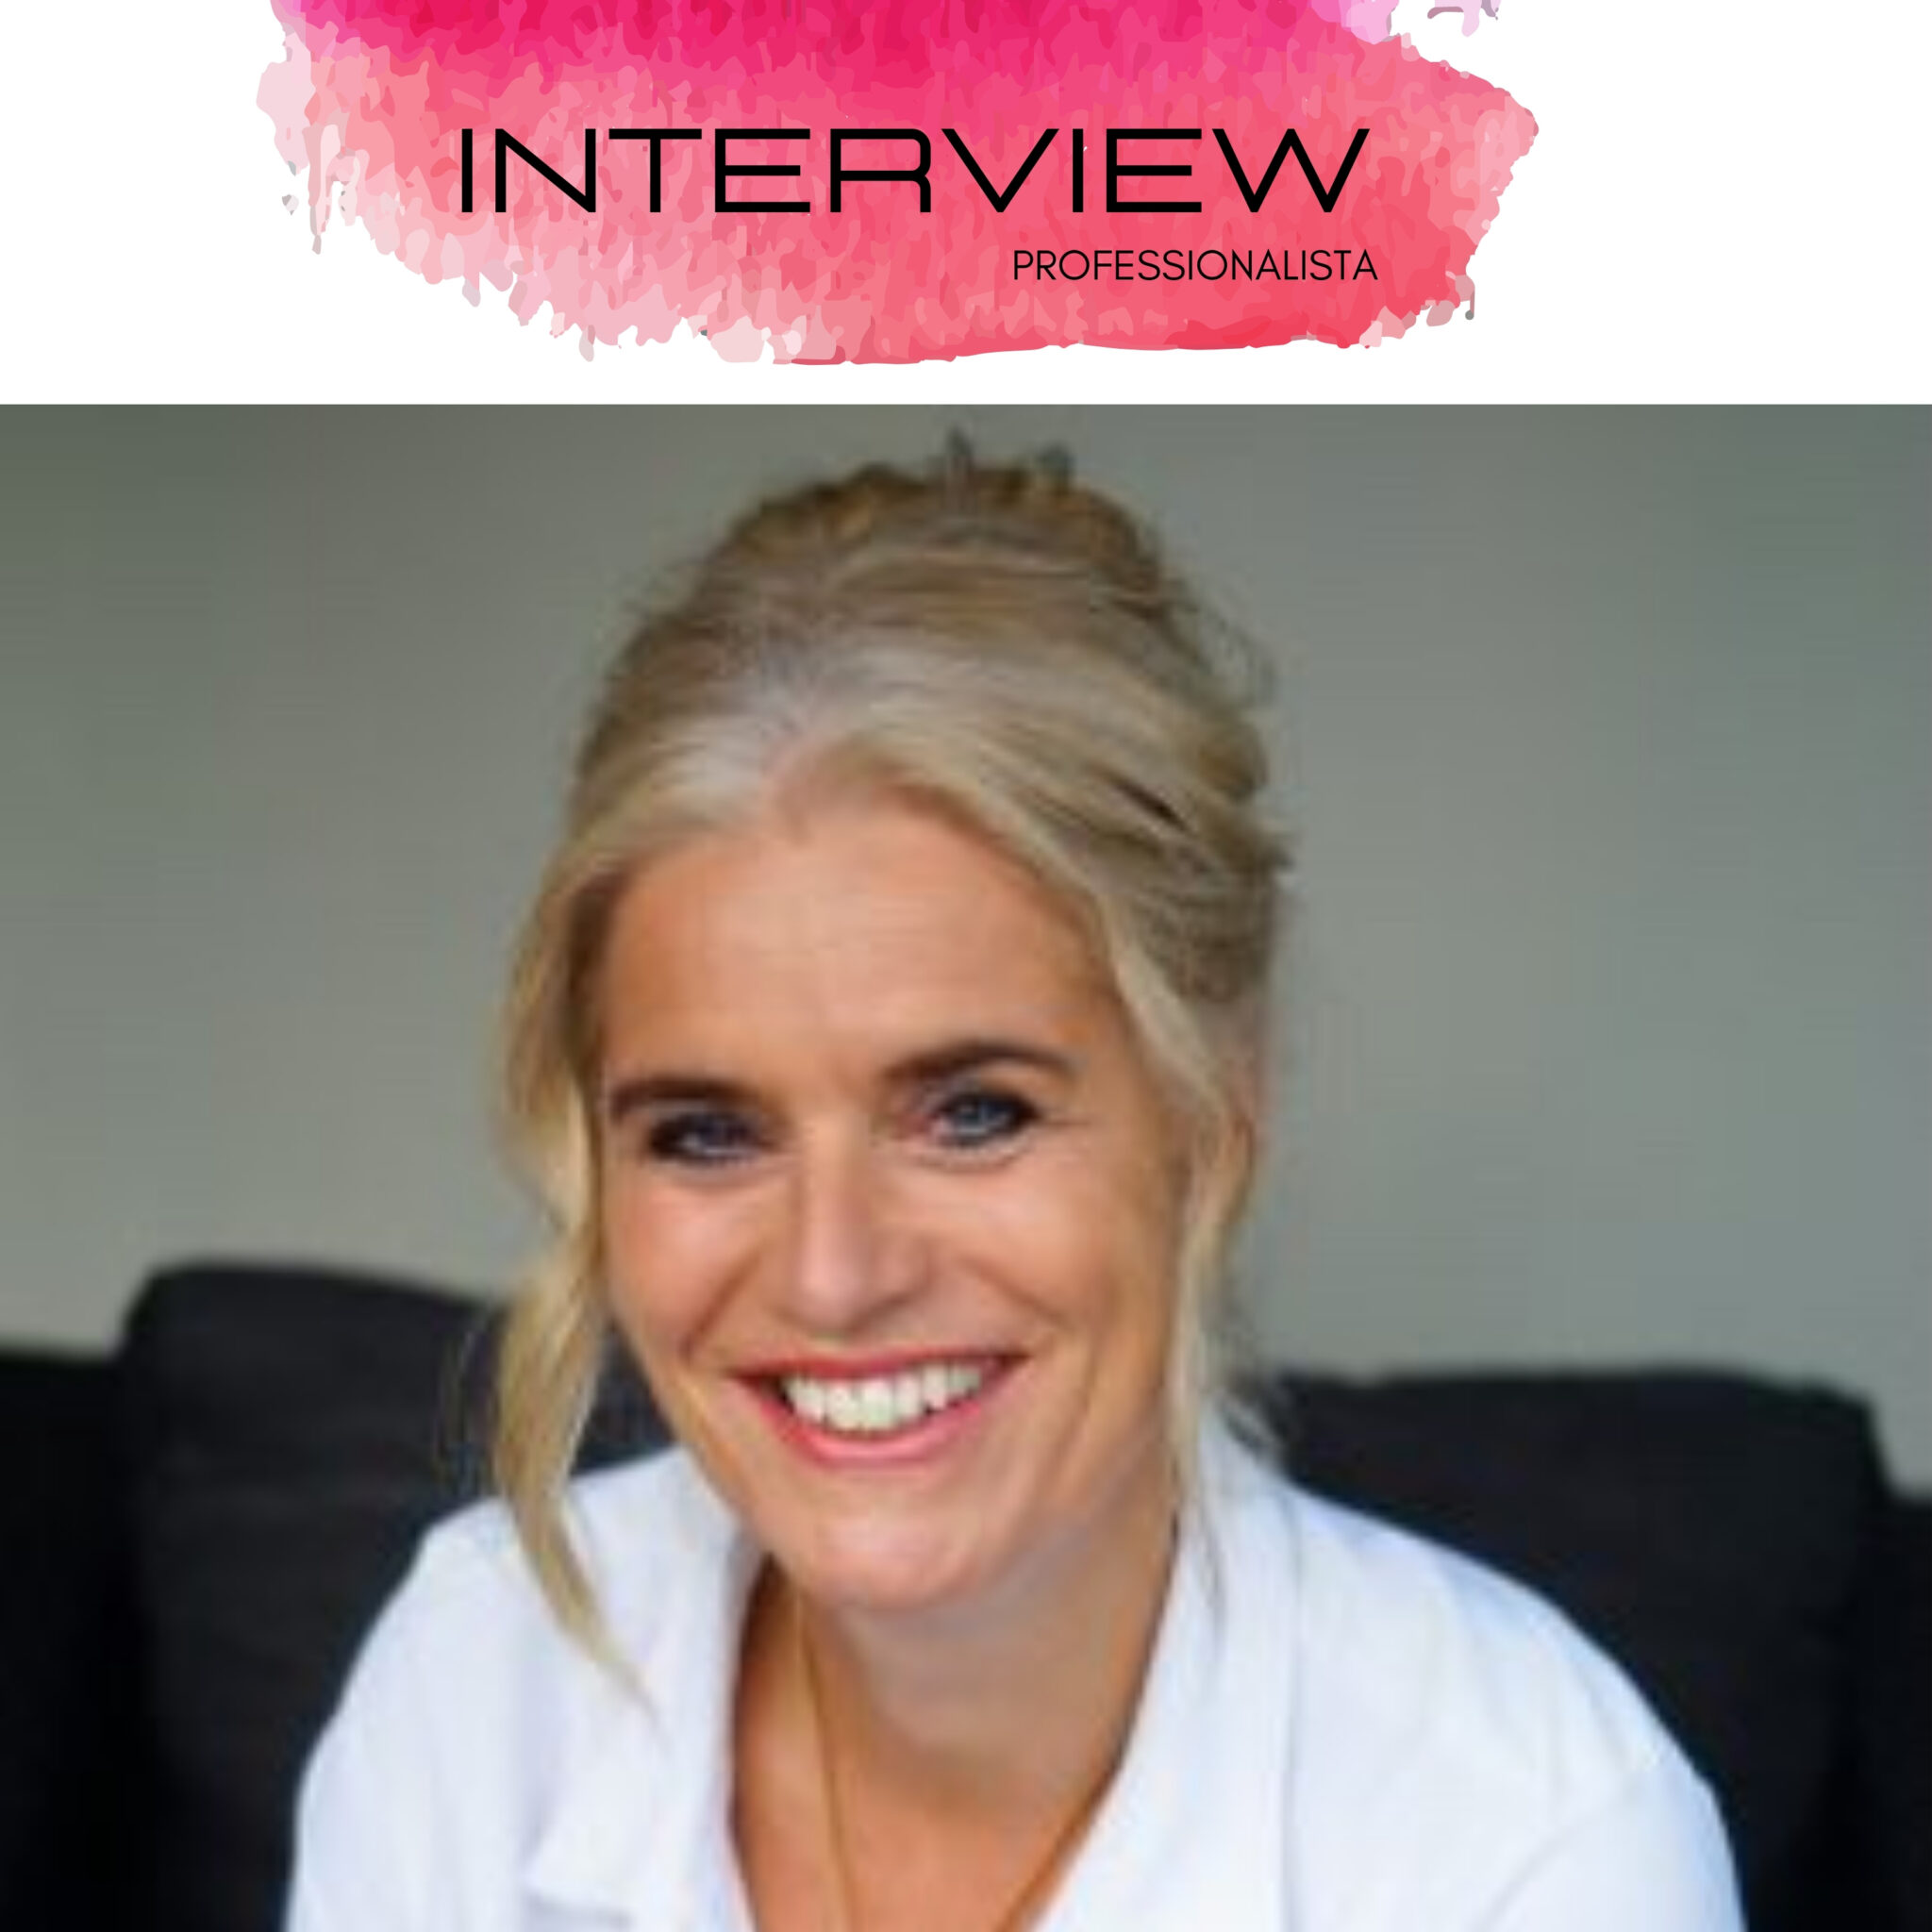 Interview Professionalista Jeanet Heinen